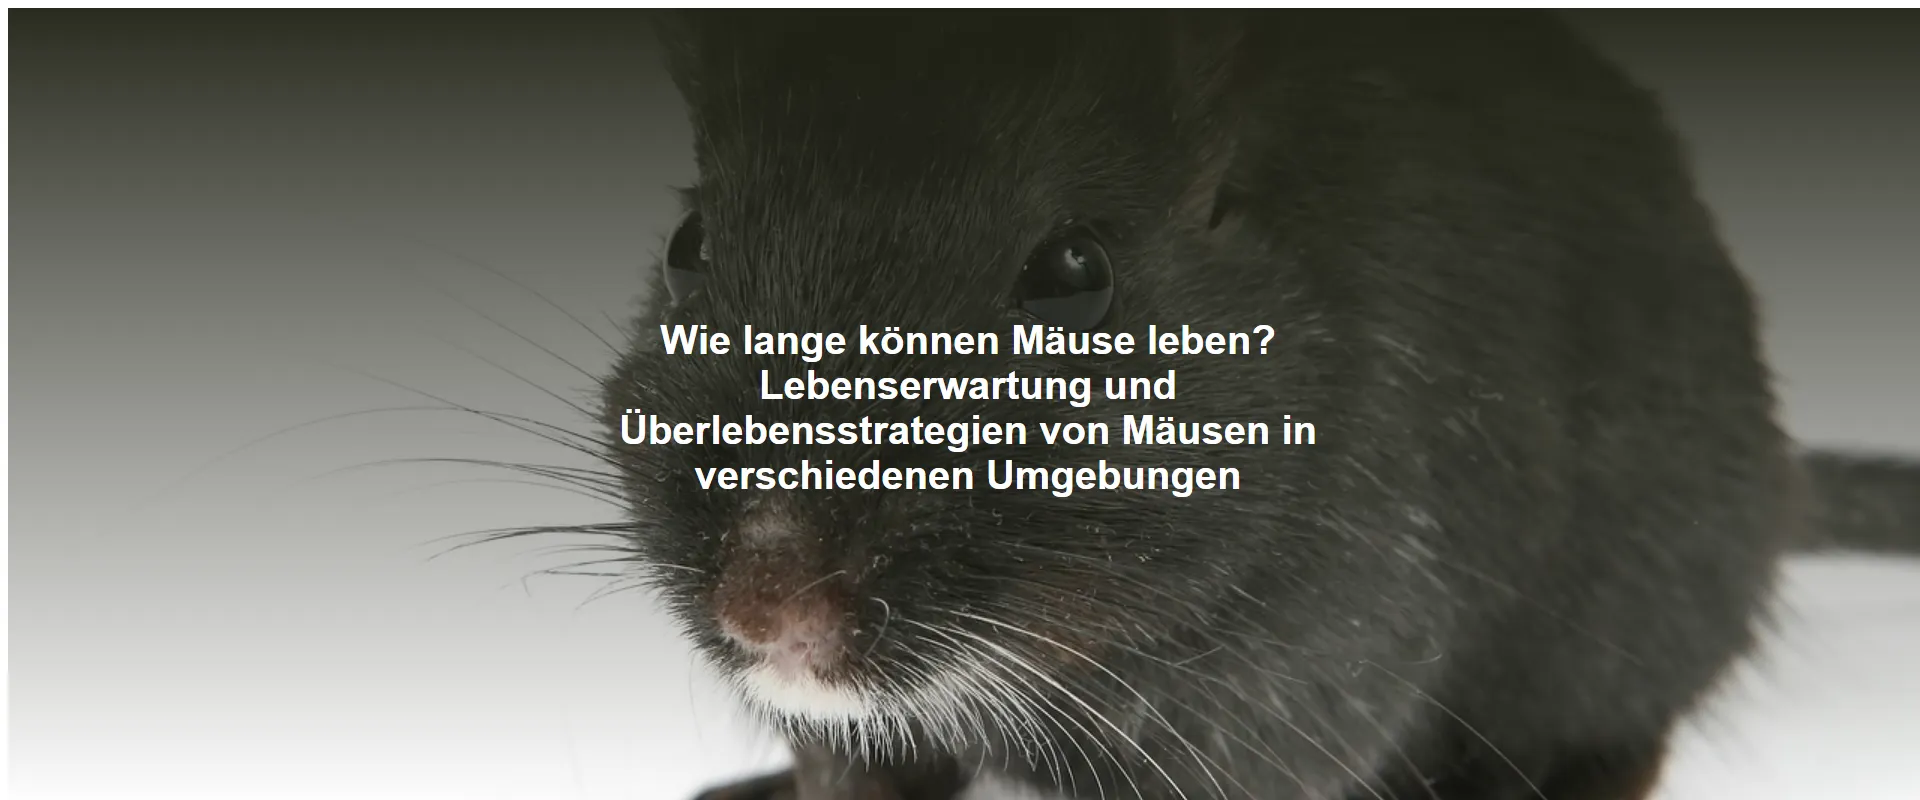 Wie lange können Mäuse leben? Lebenserwartung und Überlebensstrategien von Mäusen in verschiedenen Umgebungen